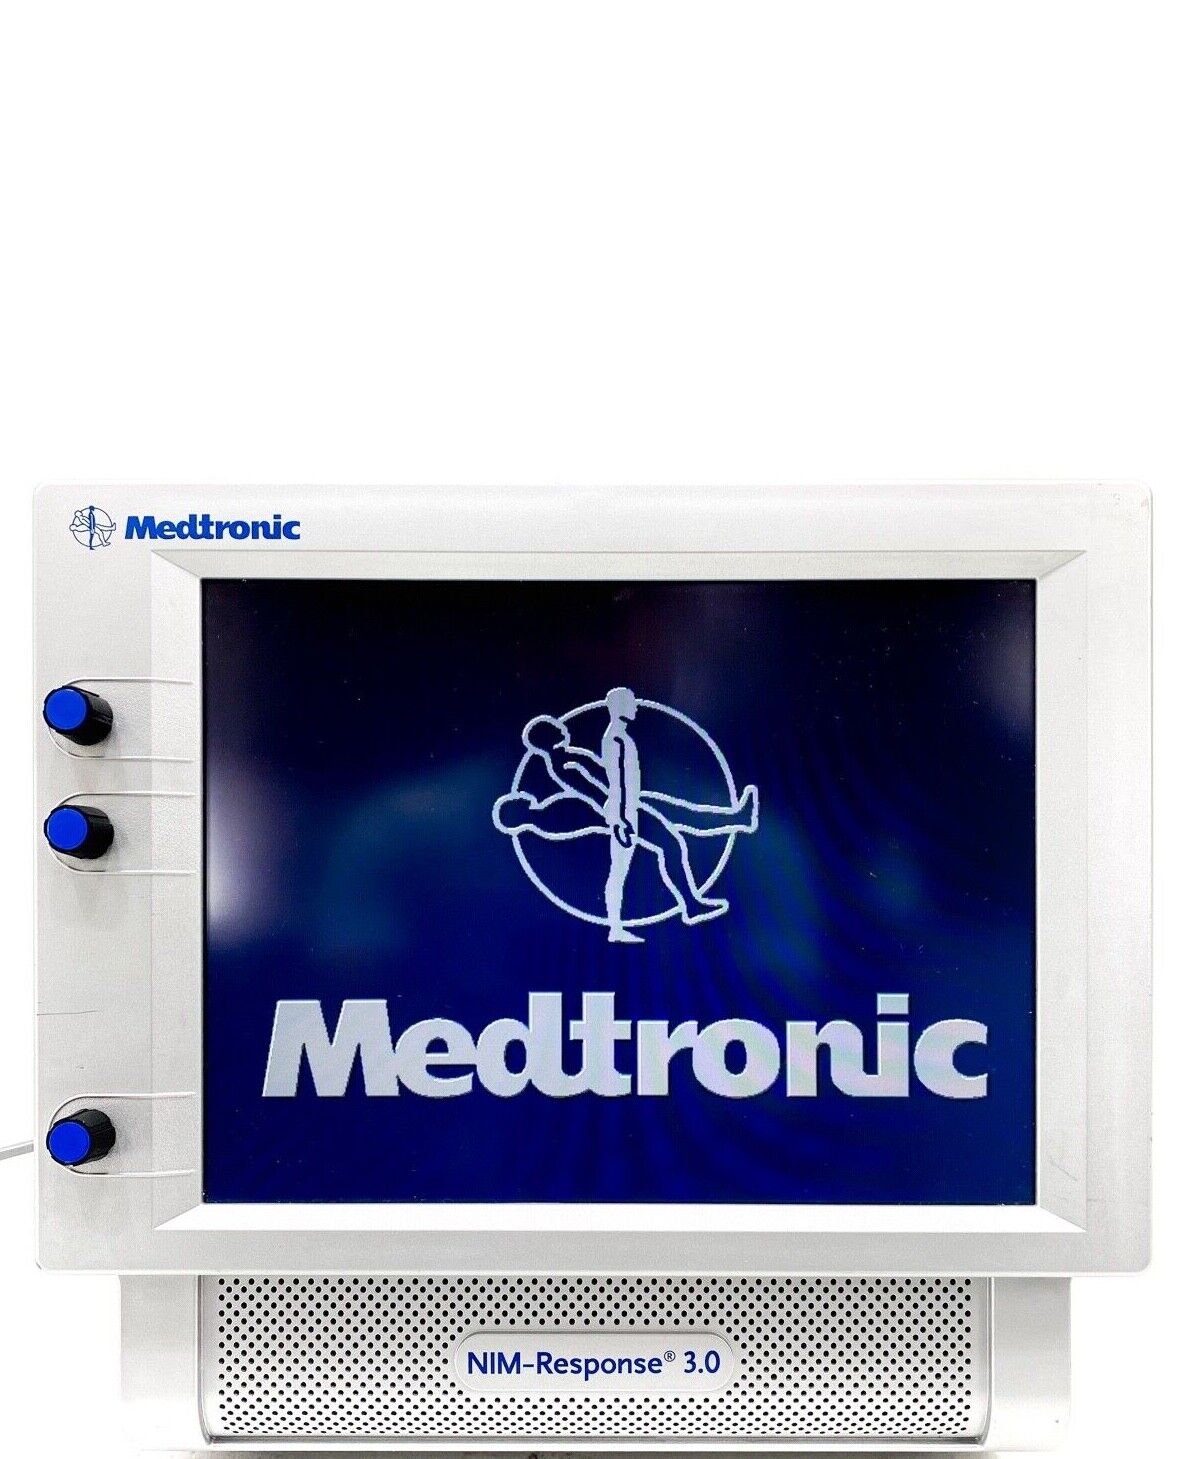 Medtronic NIM-Response 3.0 8253001 Nerve Monitoring System